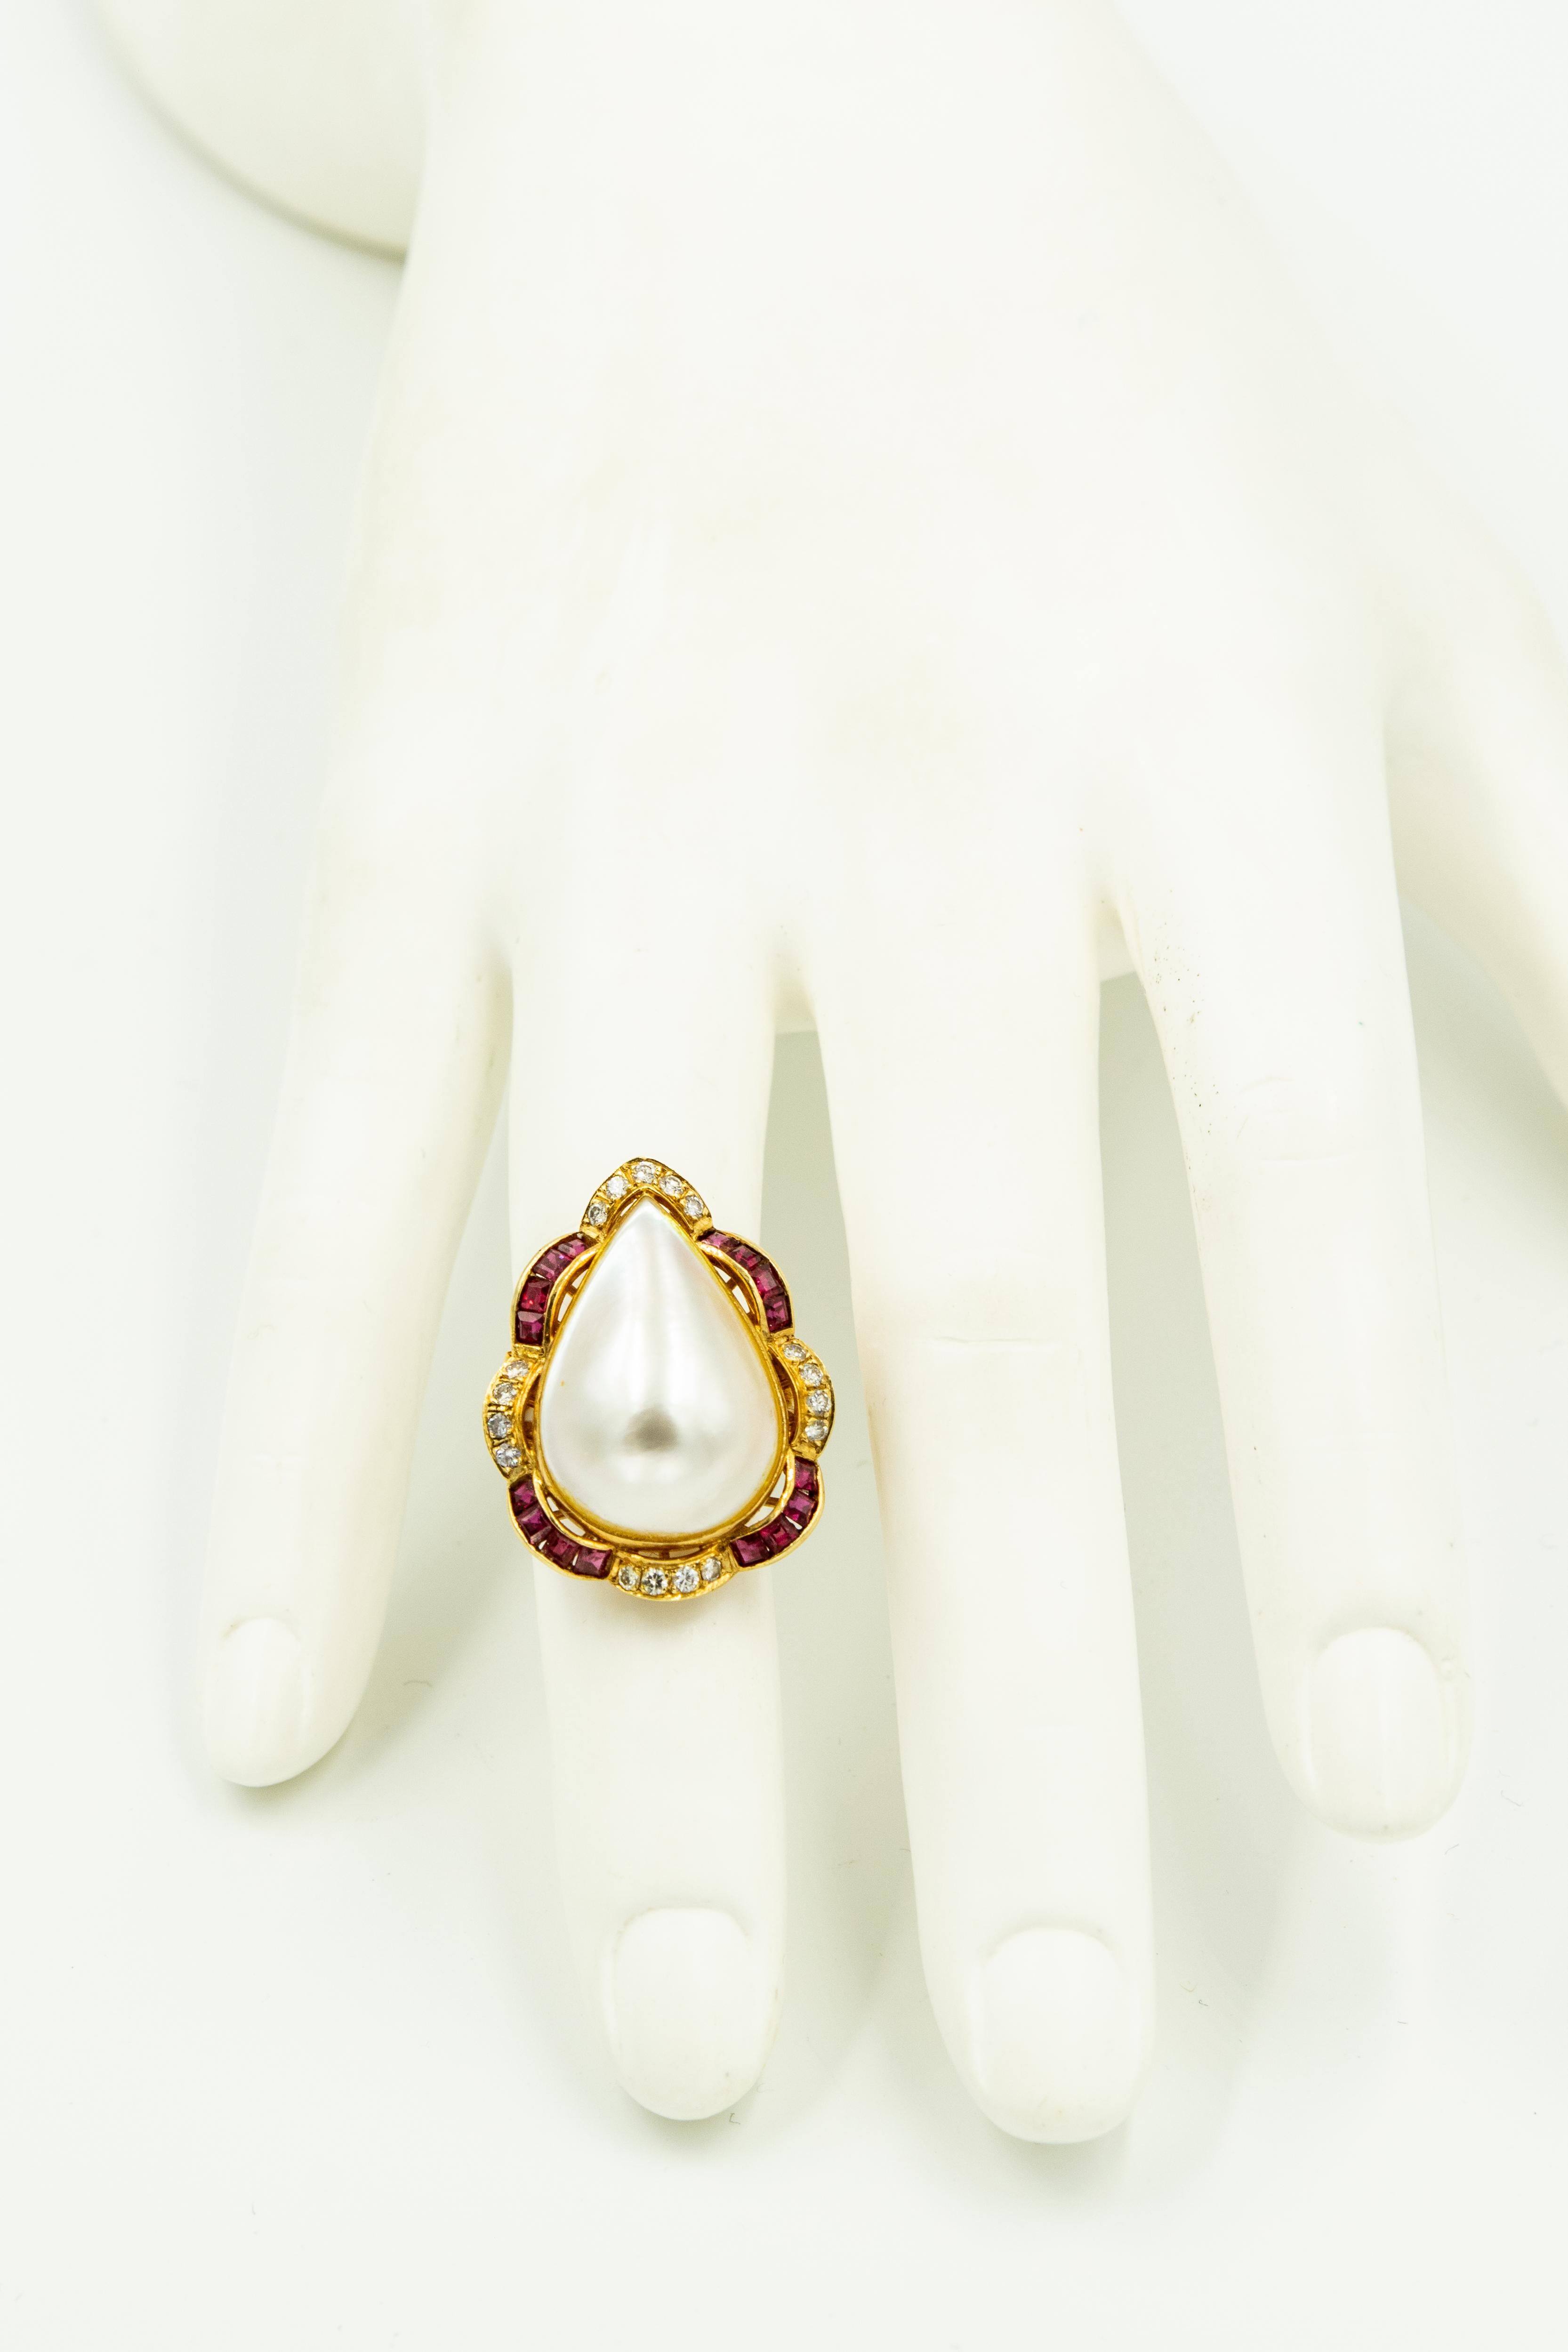 Elegante birnenförmige Mabe-Perle in der Mitte in einem gewellten Diamant und Kanal gesetzt Rubin Rahmen, der in 14k Gelbgold montiert ist Suite enthalten:

Ein Ring mit den Maßen 1,13